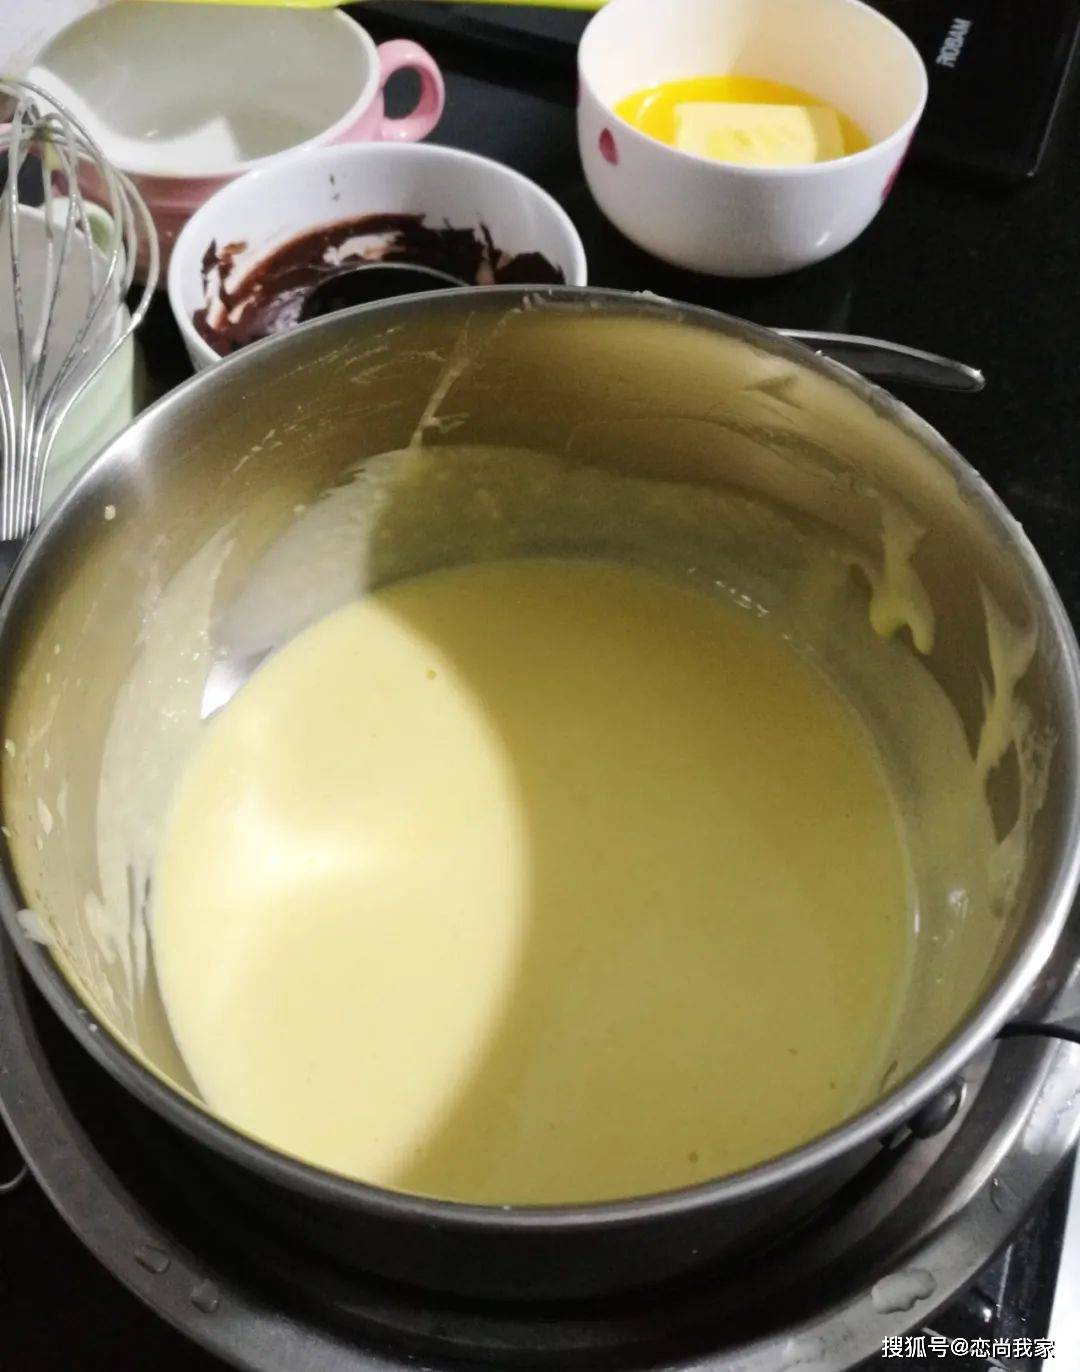 贝果奶油夹心怎么做_贝果奶油夹心的做法_石榴树2008_豆果美食